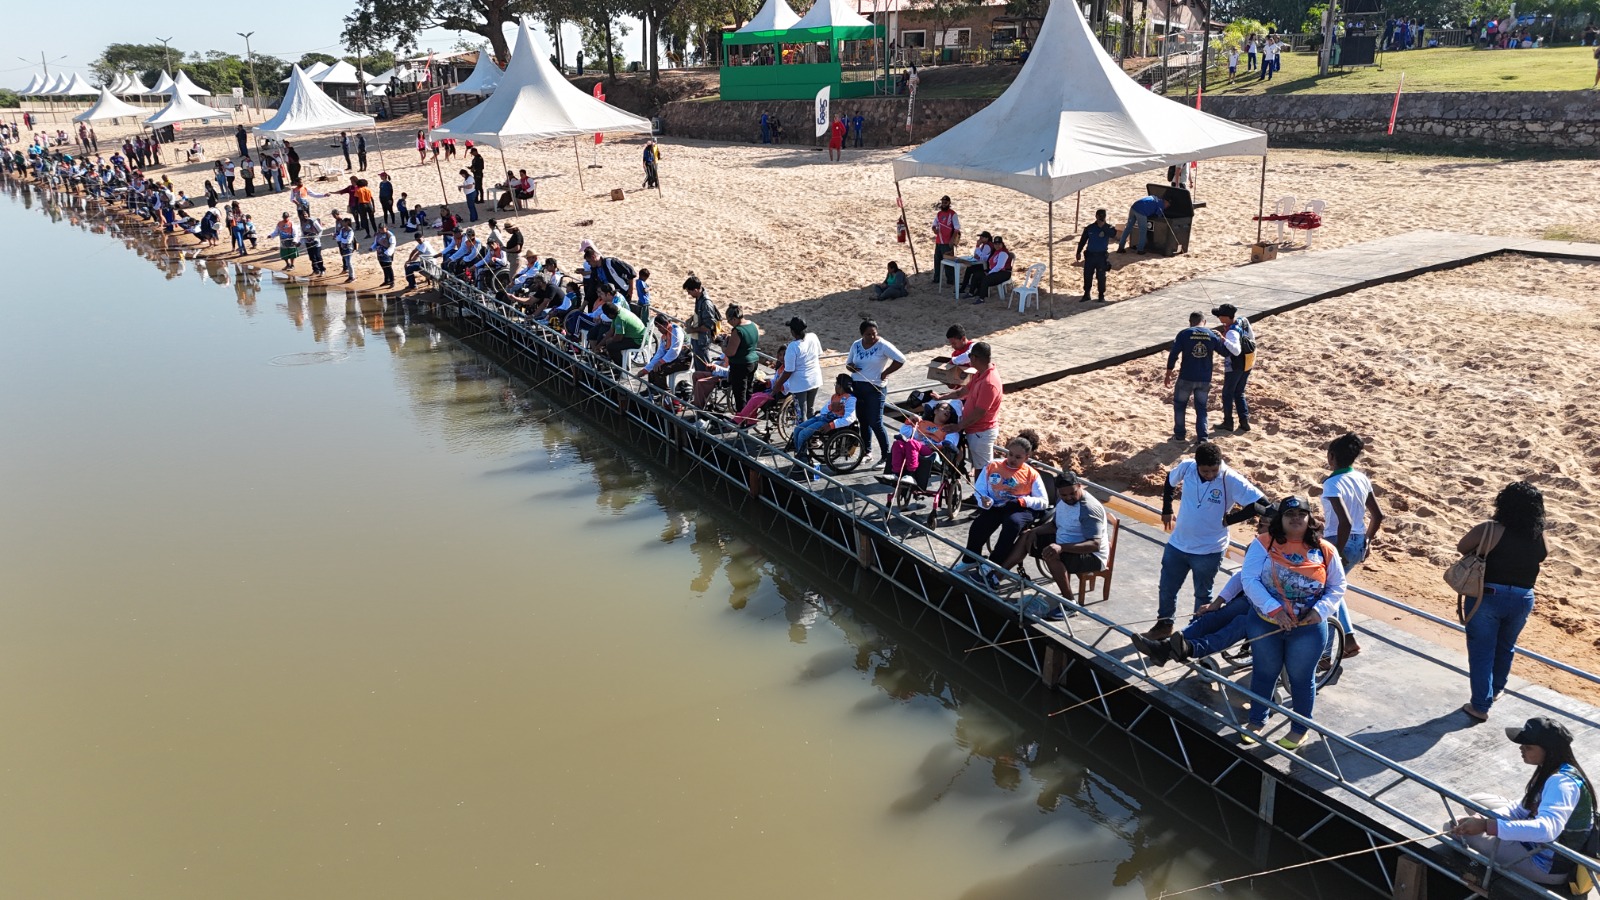 Festival de Pesca de Cáceres: A Emoção Começa Hoje